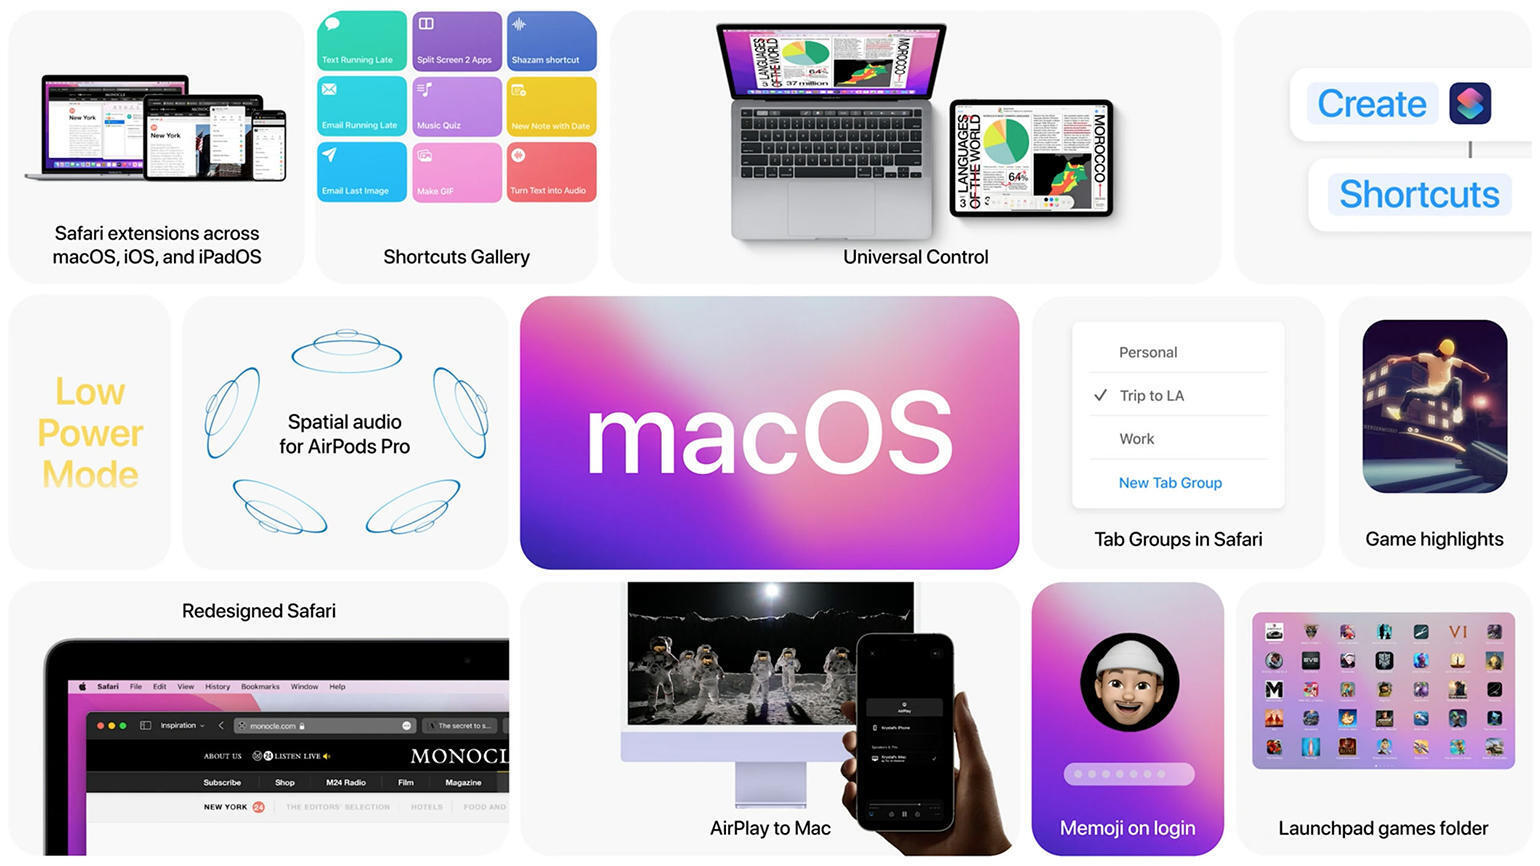 MacOS Monterey (12.0.1) : La productivité à nouveau au menu